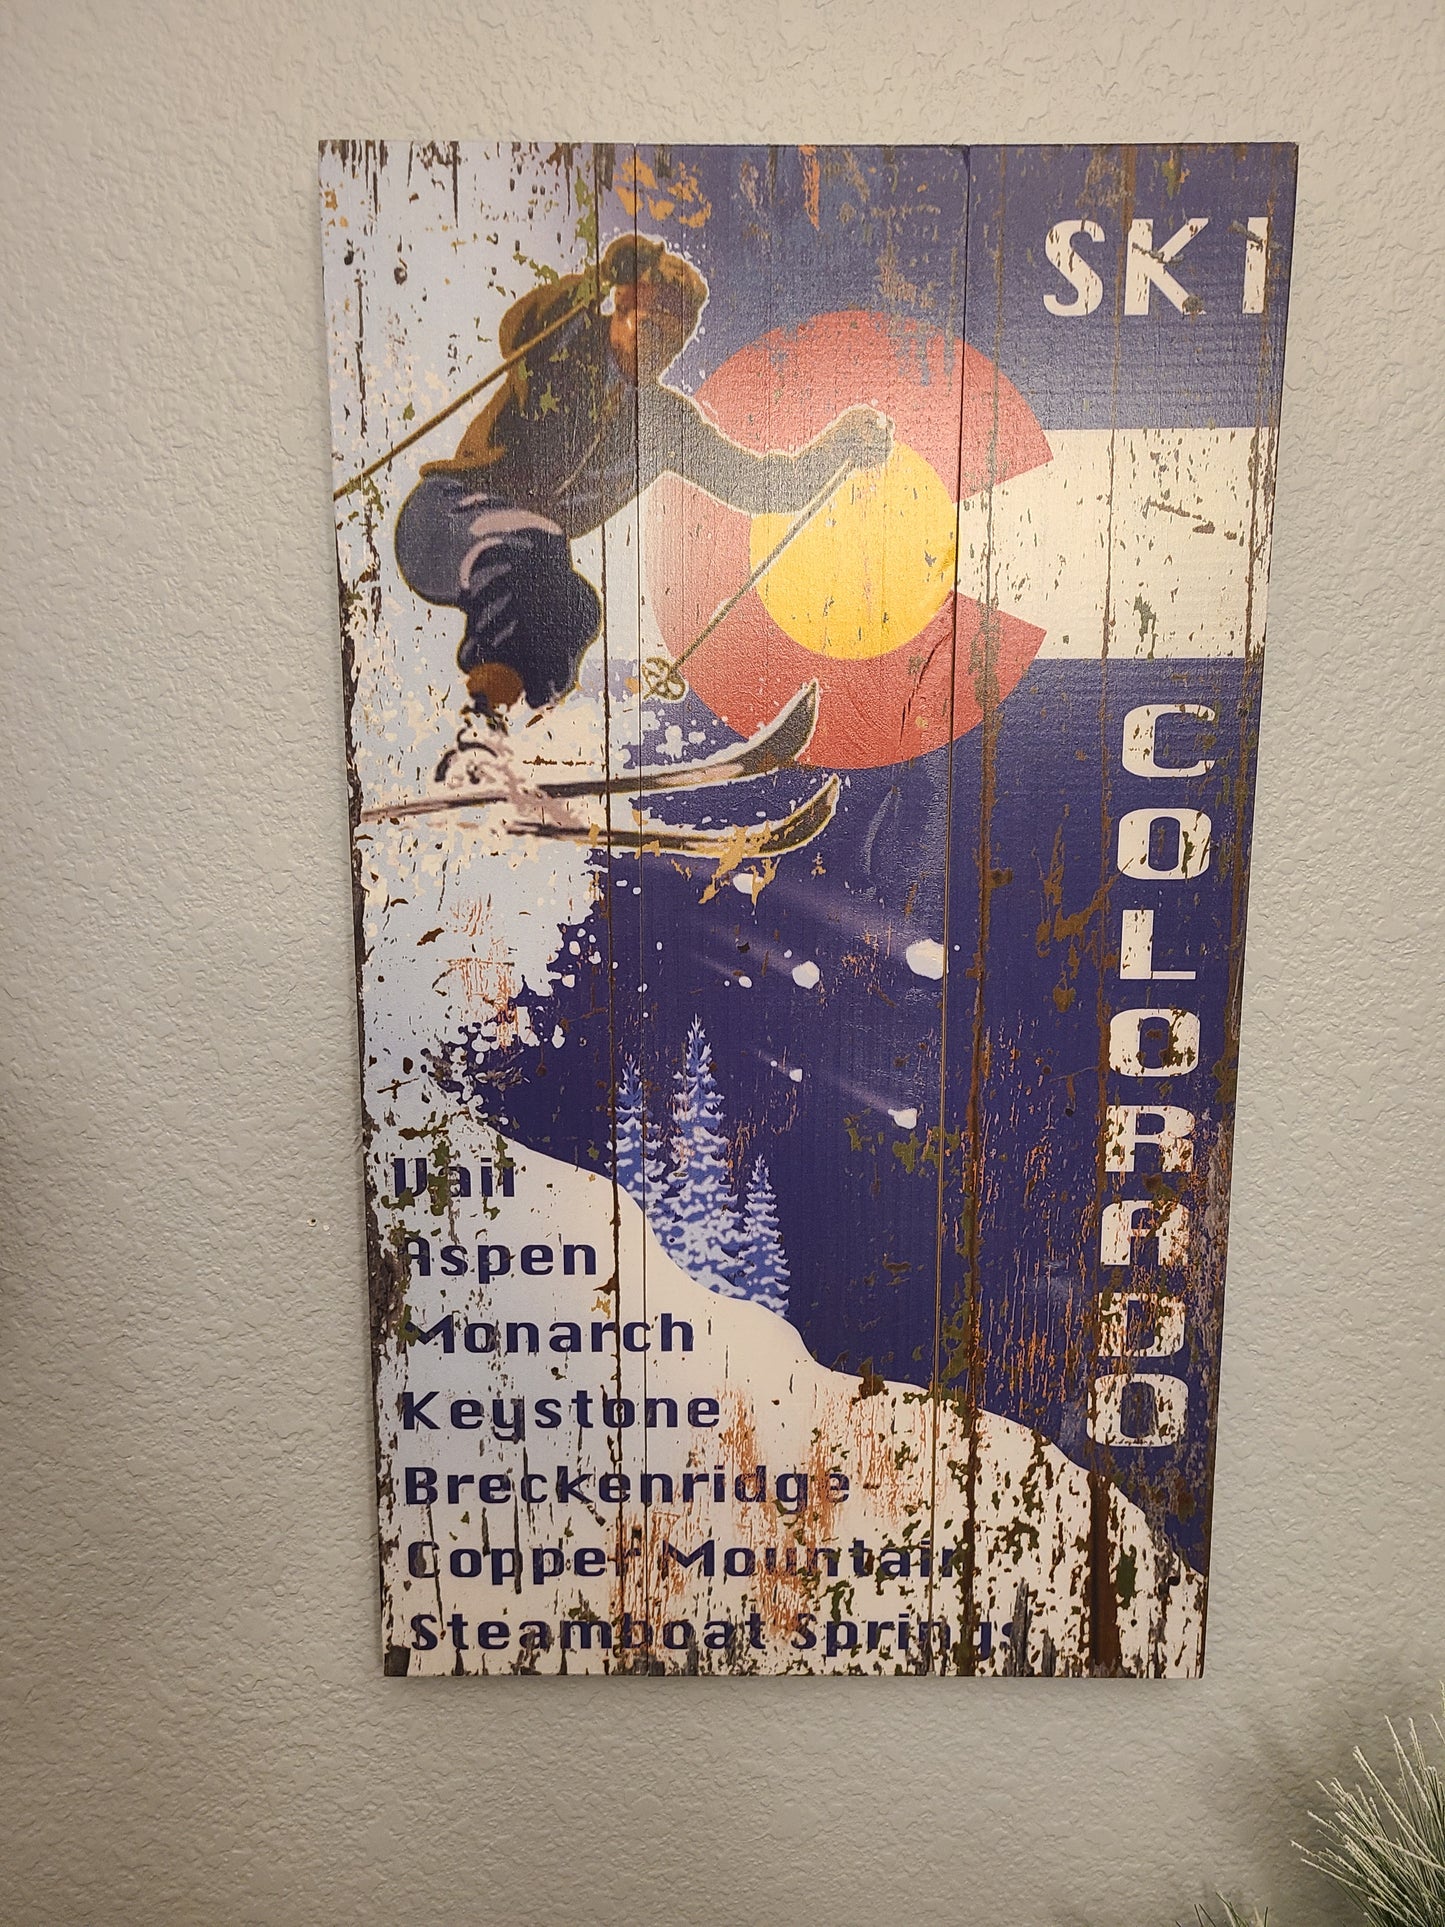 Ski Colorado Sign